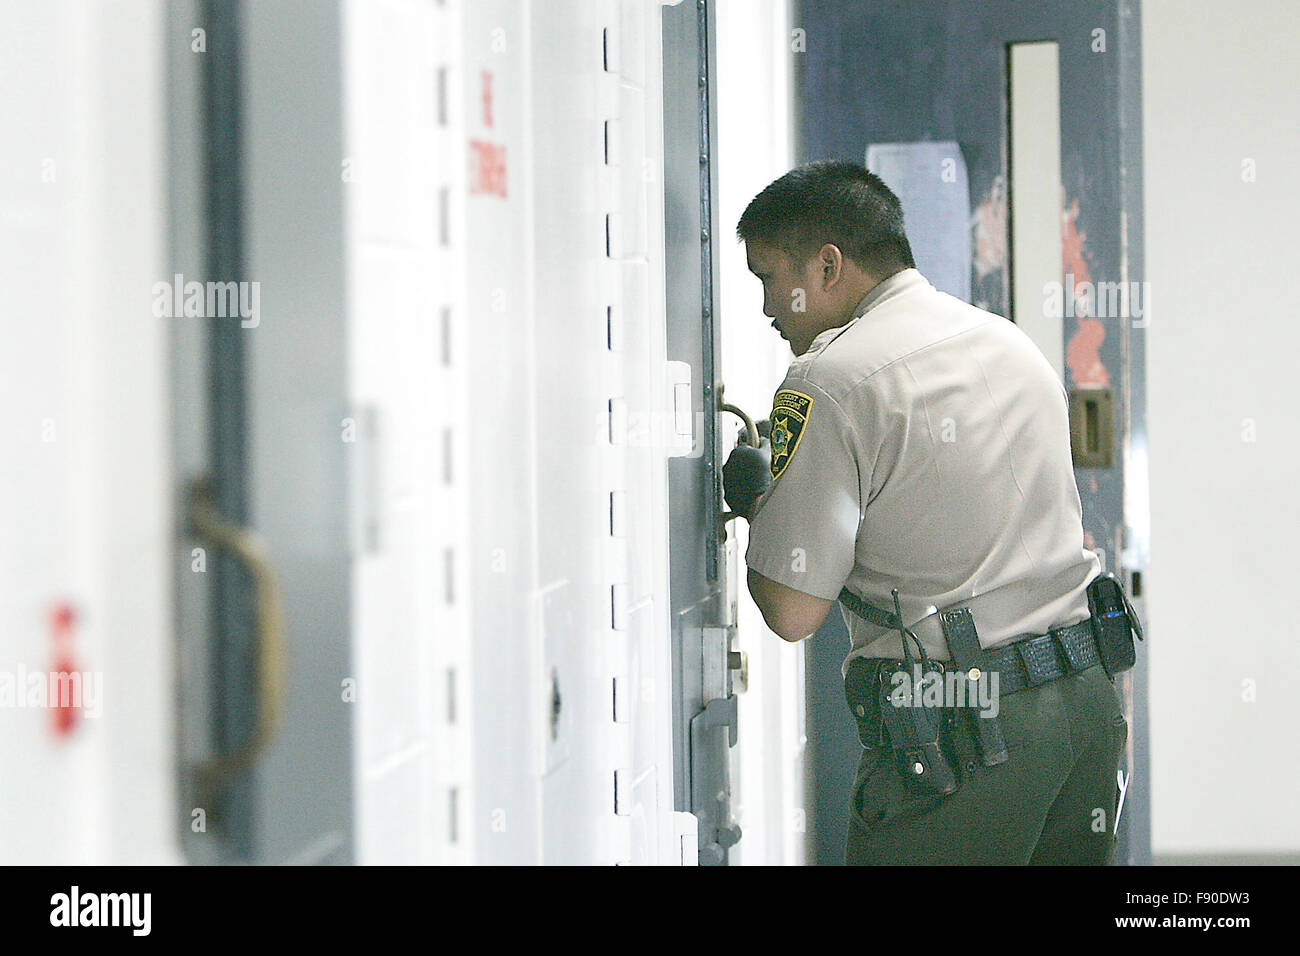 Napa, CA, USA. Dec 11, 2015. Le Comté de Napa un agent de correction des contrôles sur l'état d'un détenu dans une des unités. © Napa Valley Inscription/ZUMA/Alamy Fil Live News Banque D'Images